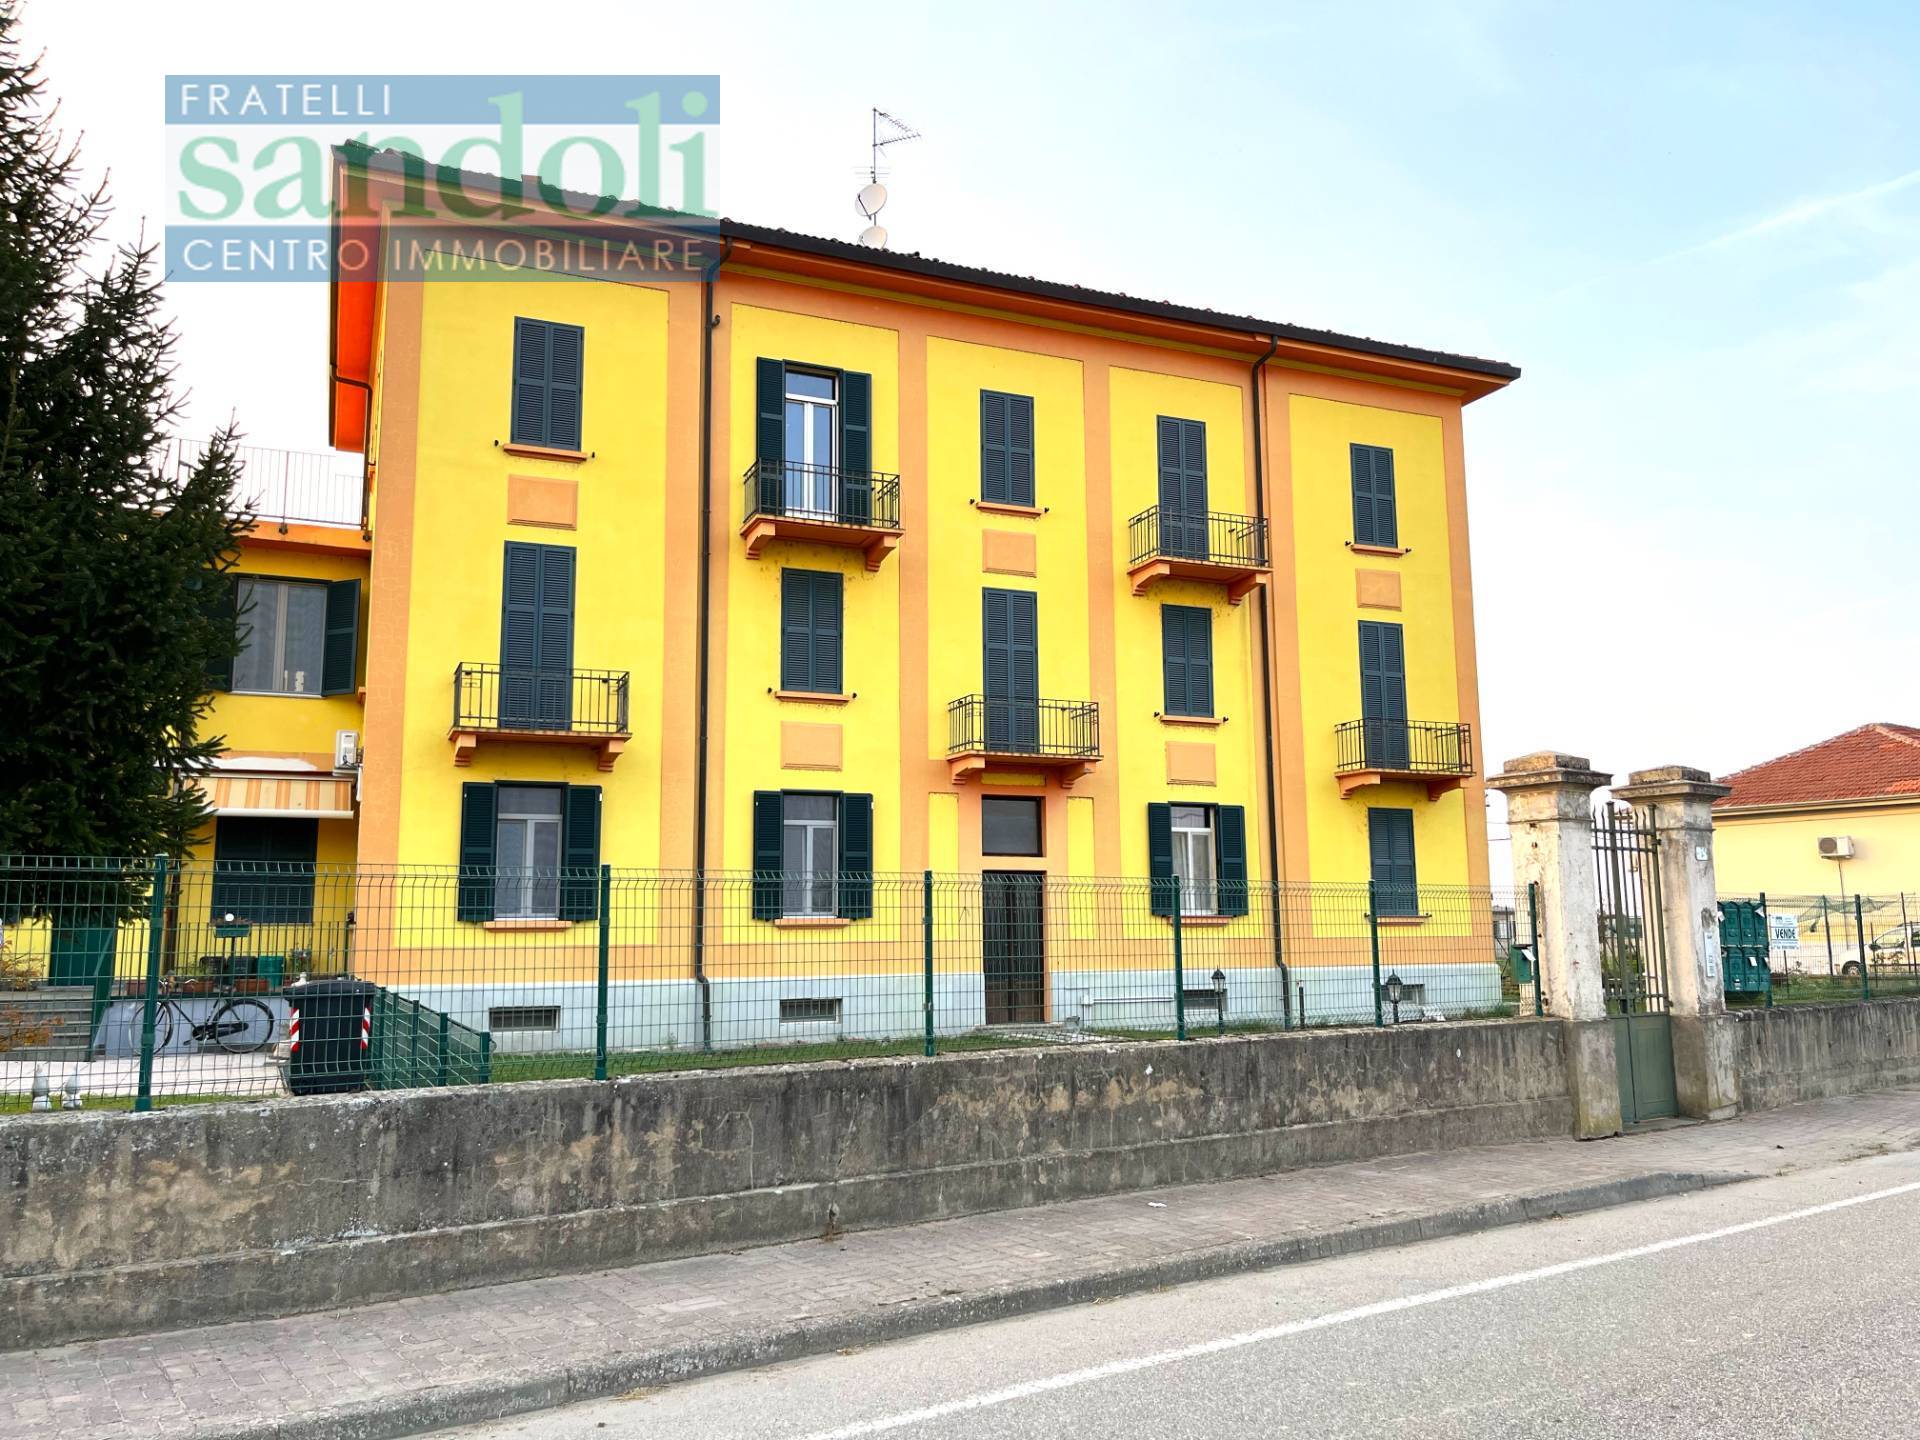 Appartamento in vendita a Palestro, 3 locali, zona Località: Paesi, prezzo € 100.000 | PortaleAgenzieImmobiliari.it